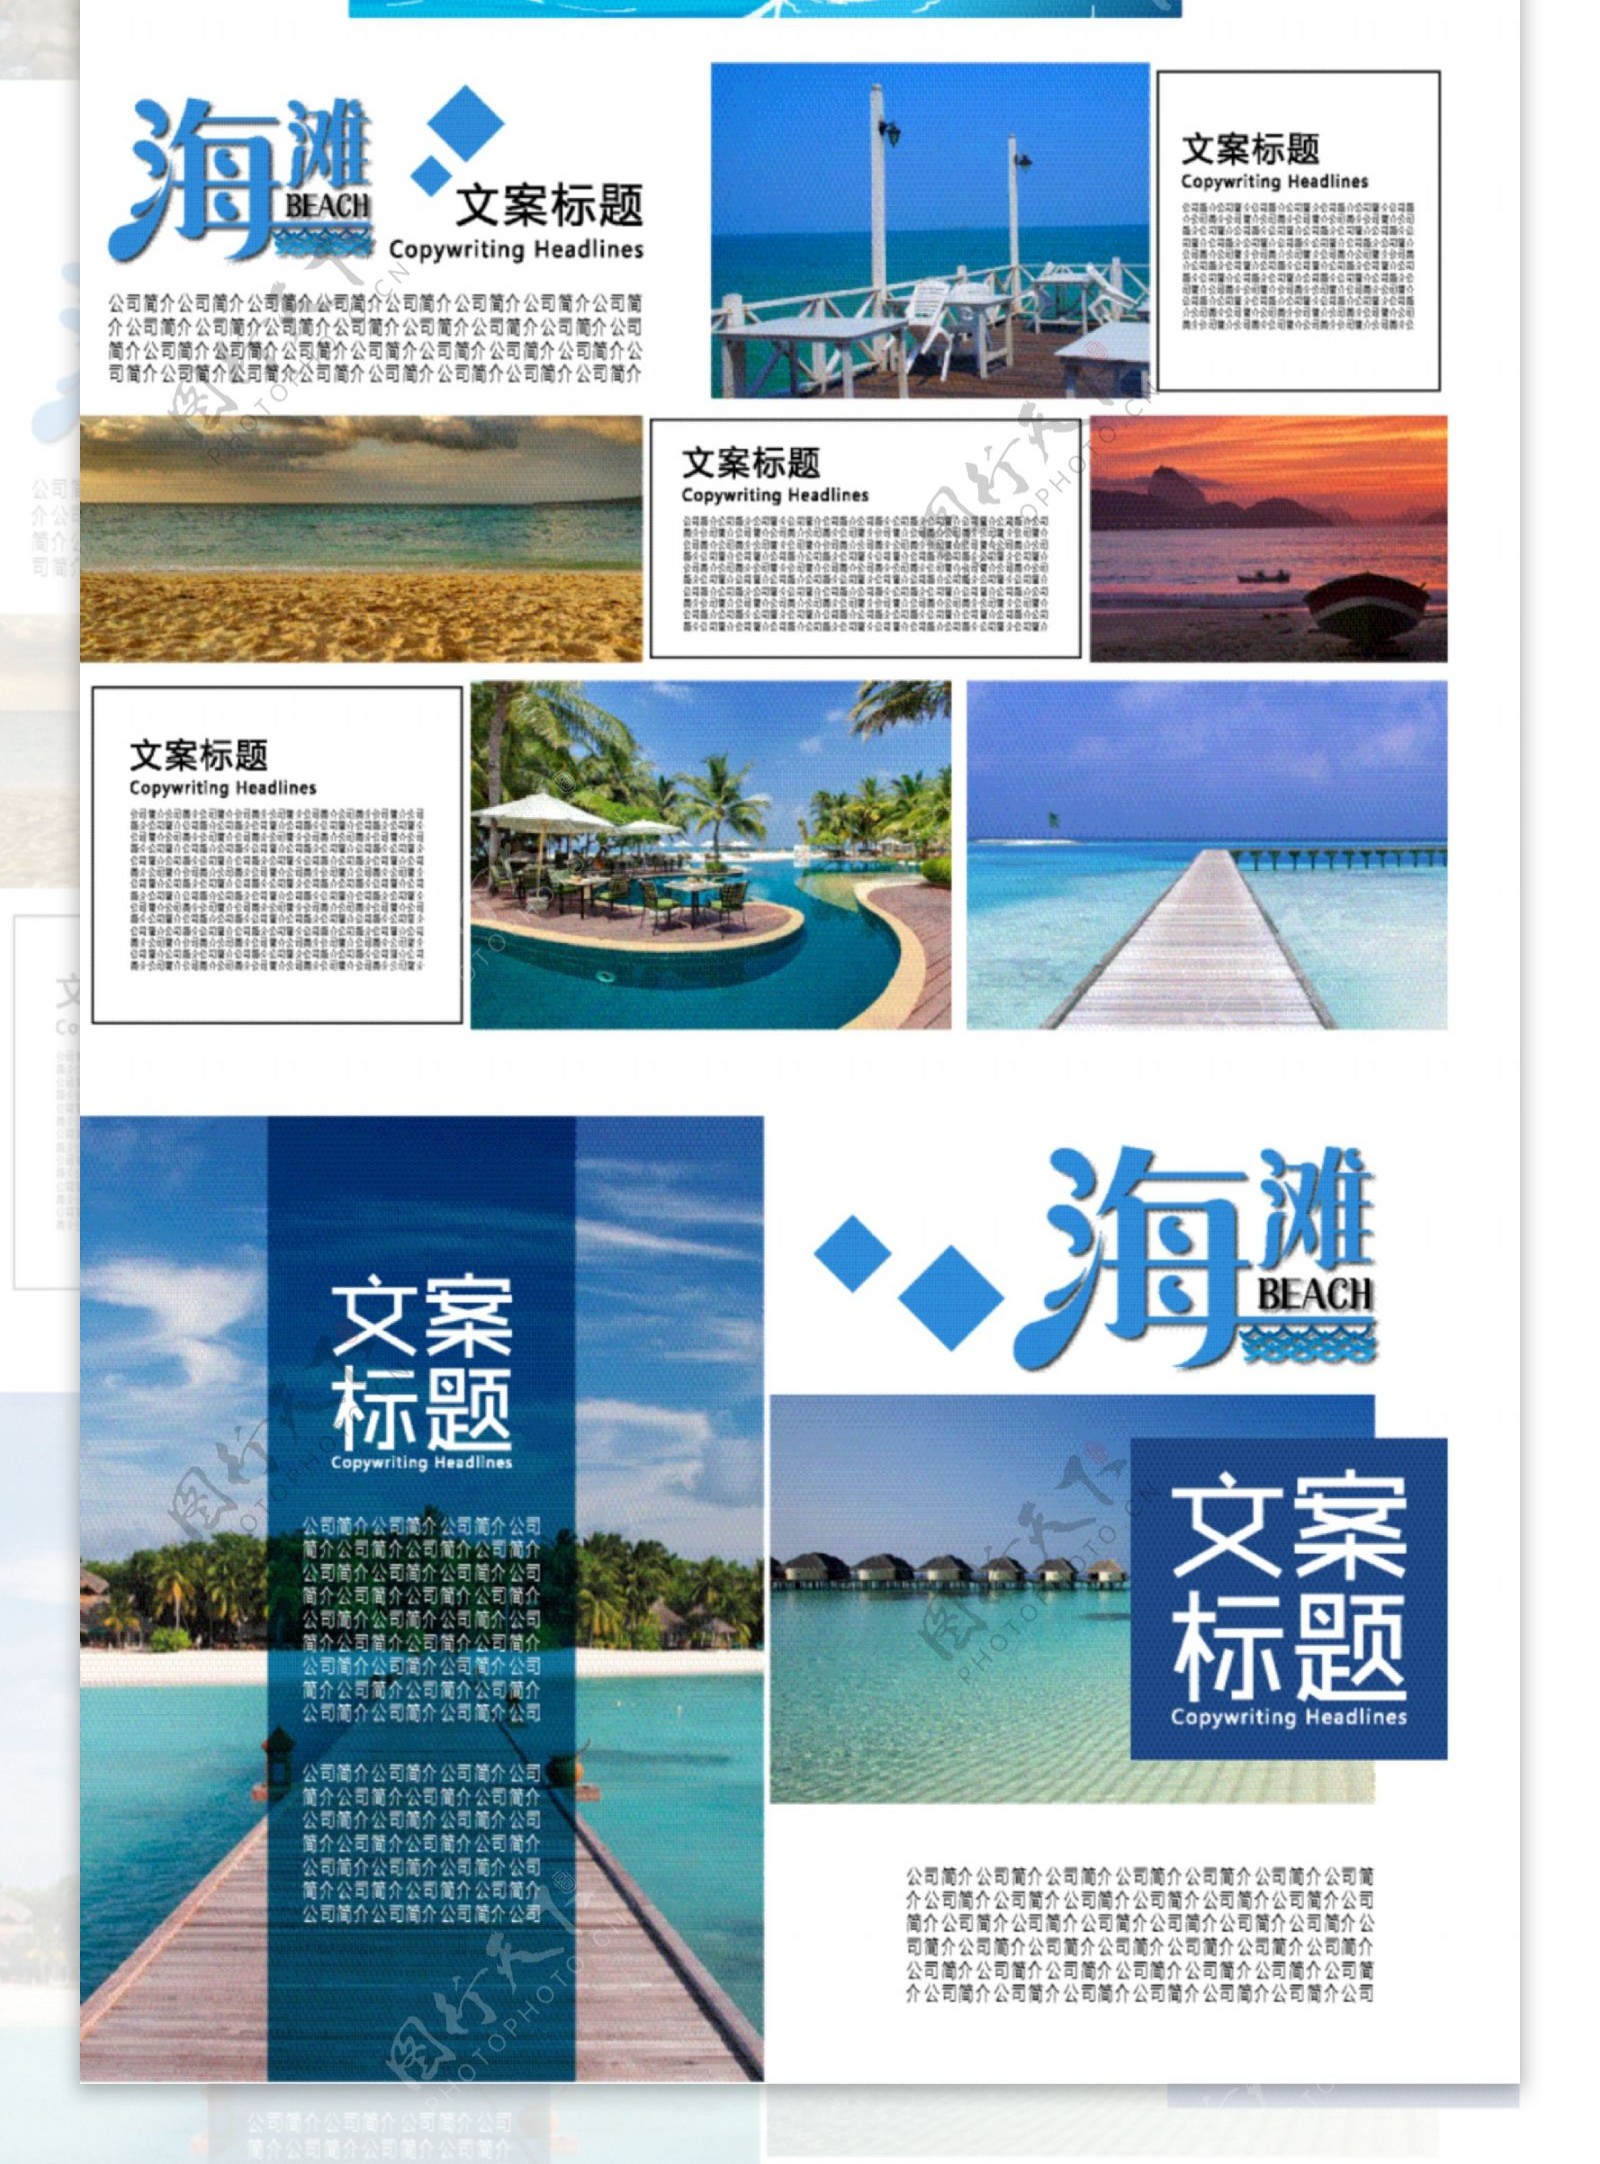 蓝色小清新海滩旅游画册杂志